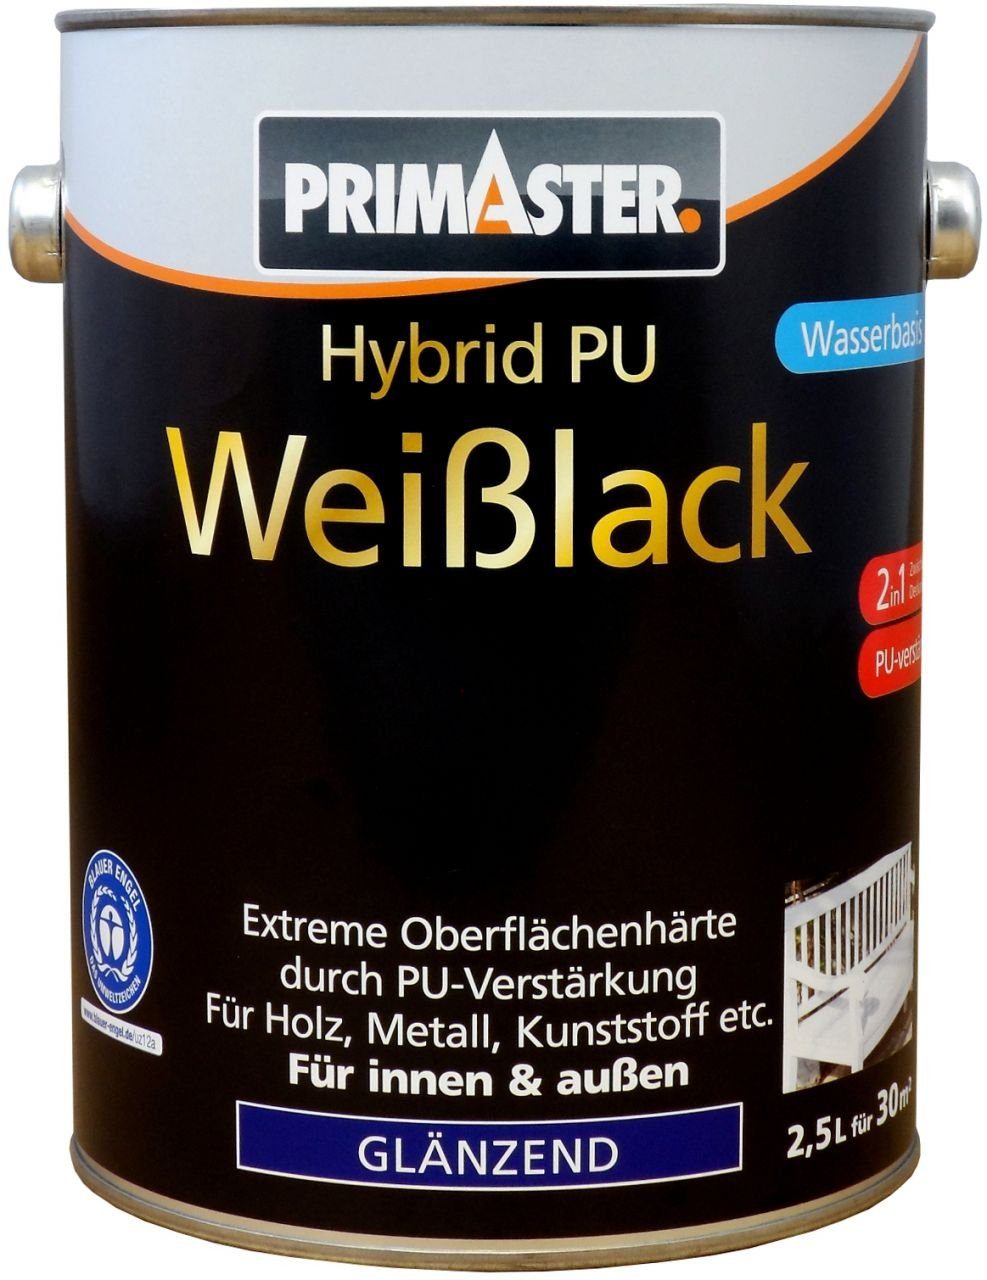 Primaster Weißlack Primaster Hybrid-PU-Weißlack 2,5 L glänzend